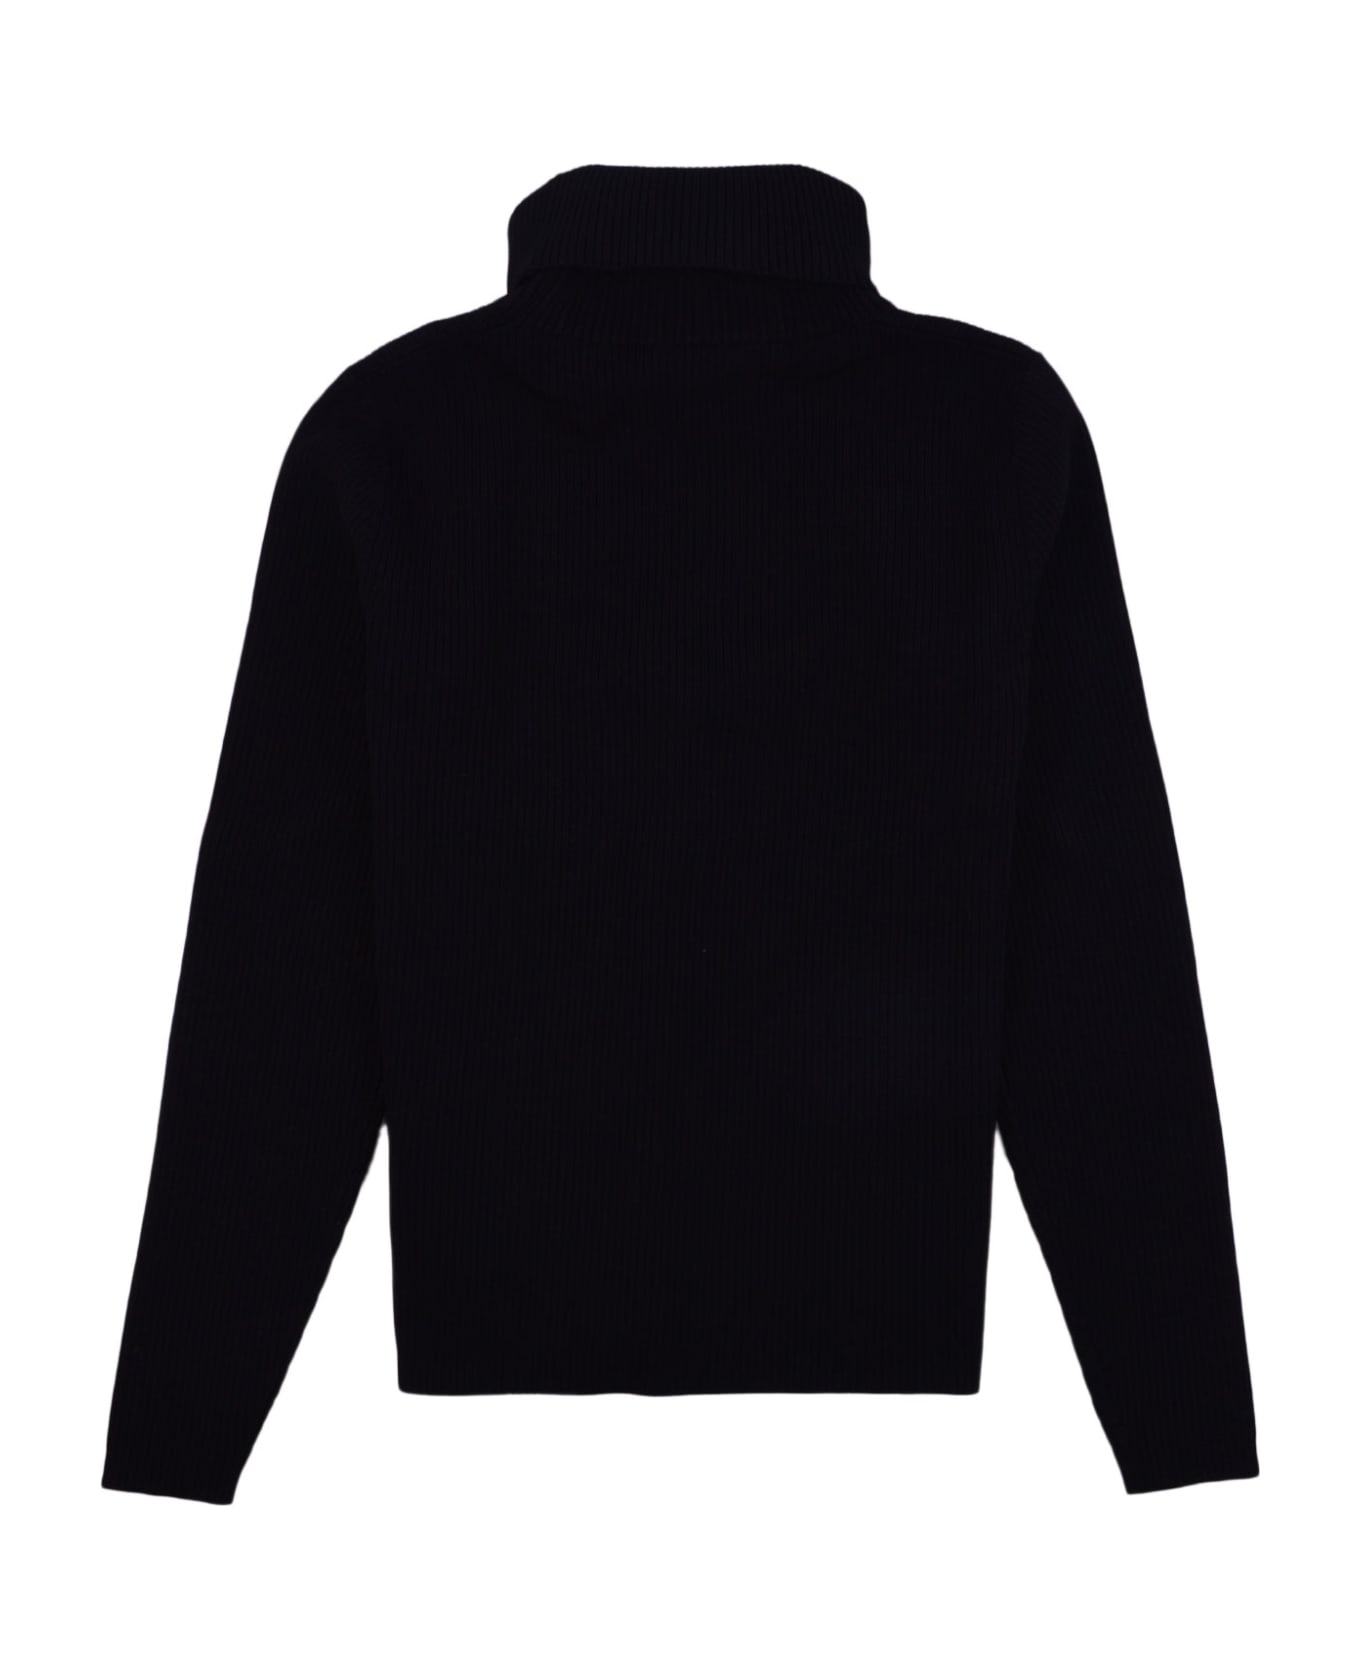 RRD - Roberto Ricci Design Sweater - Nero